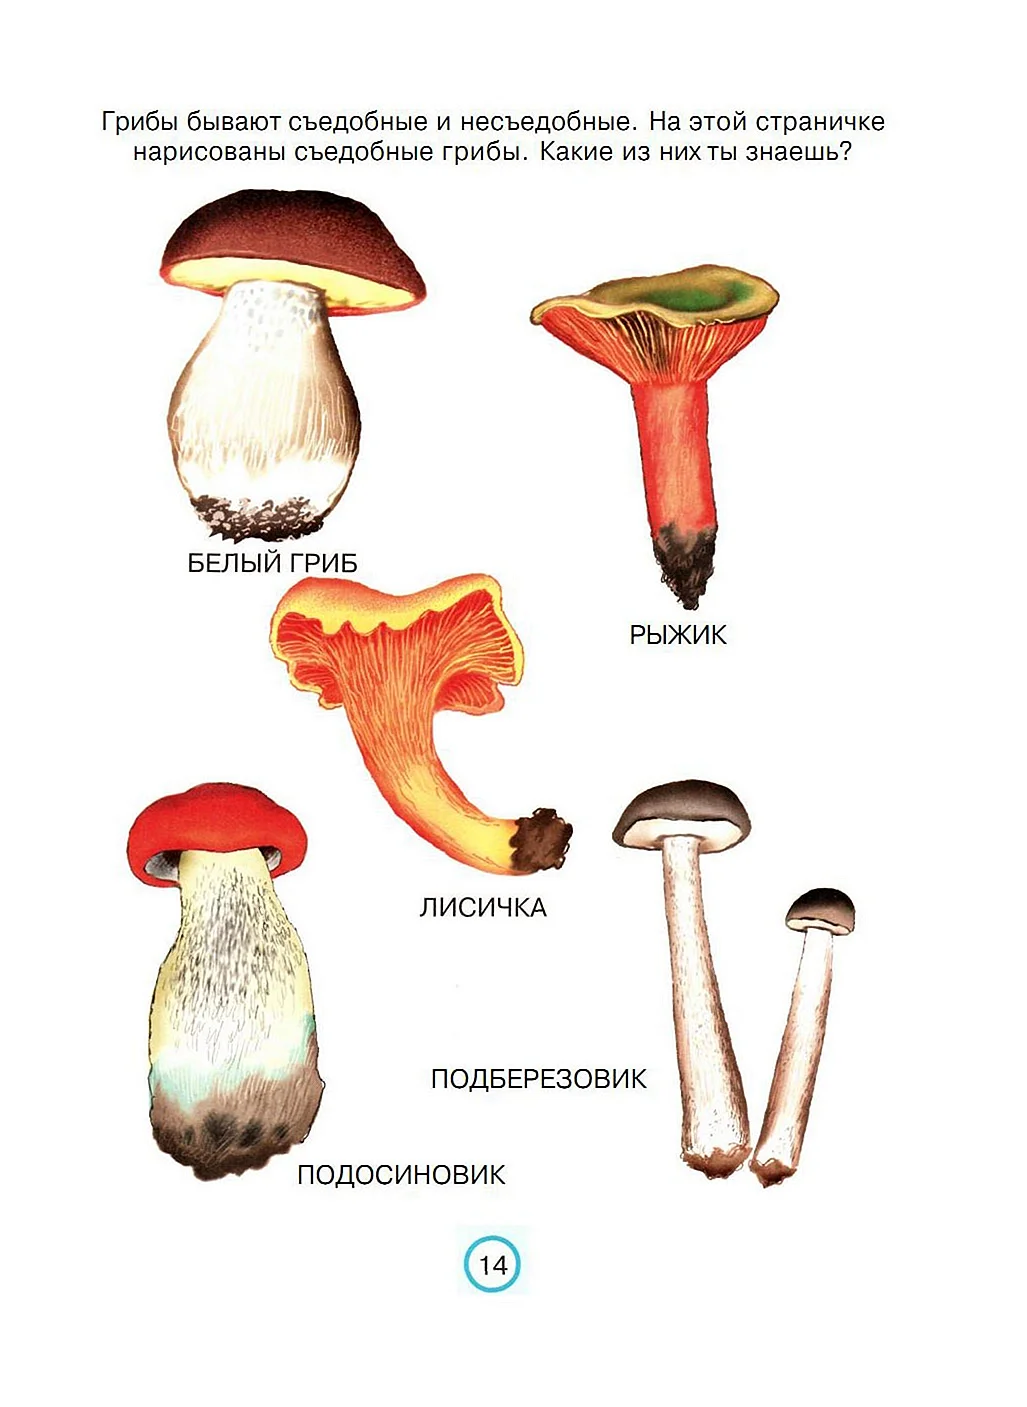 Схема съедобные и несъедобные грибы